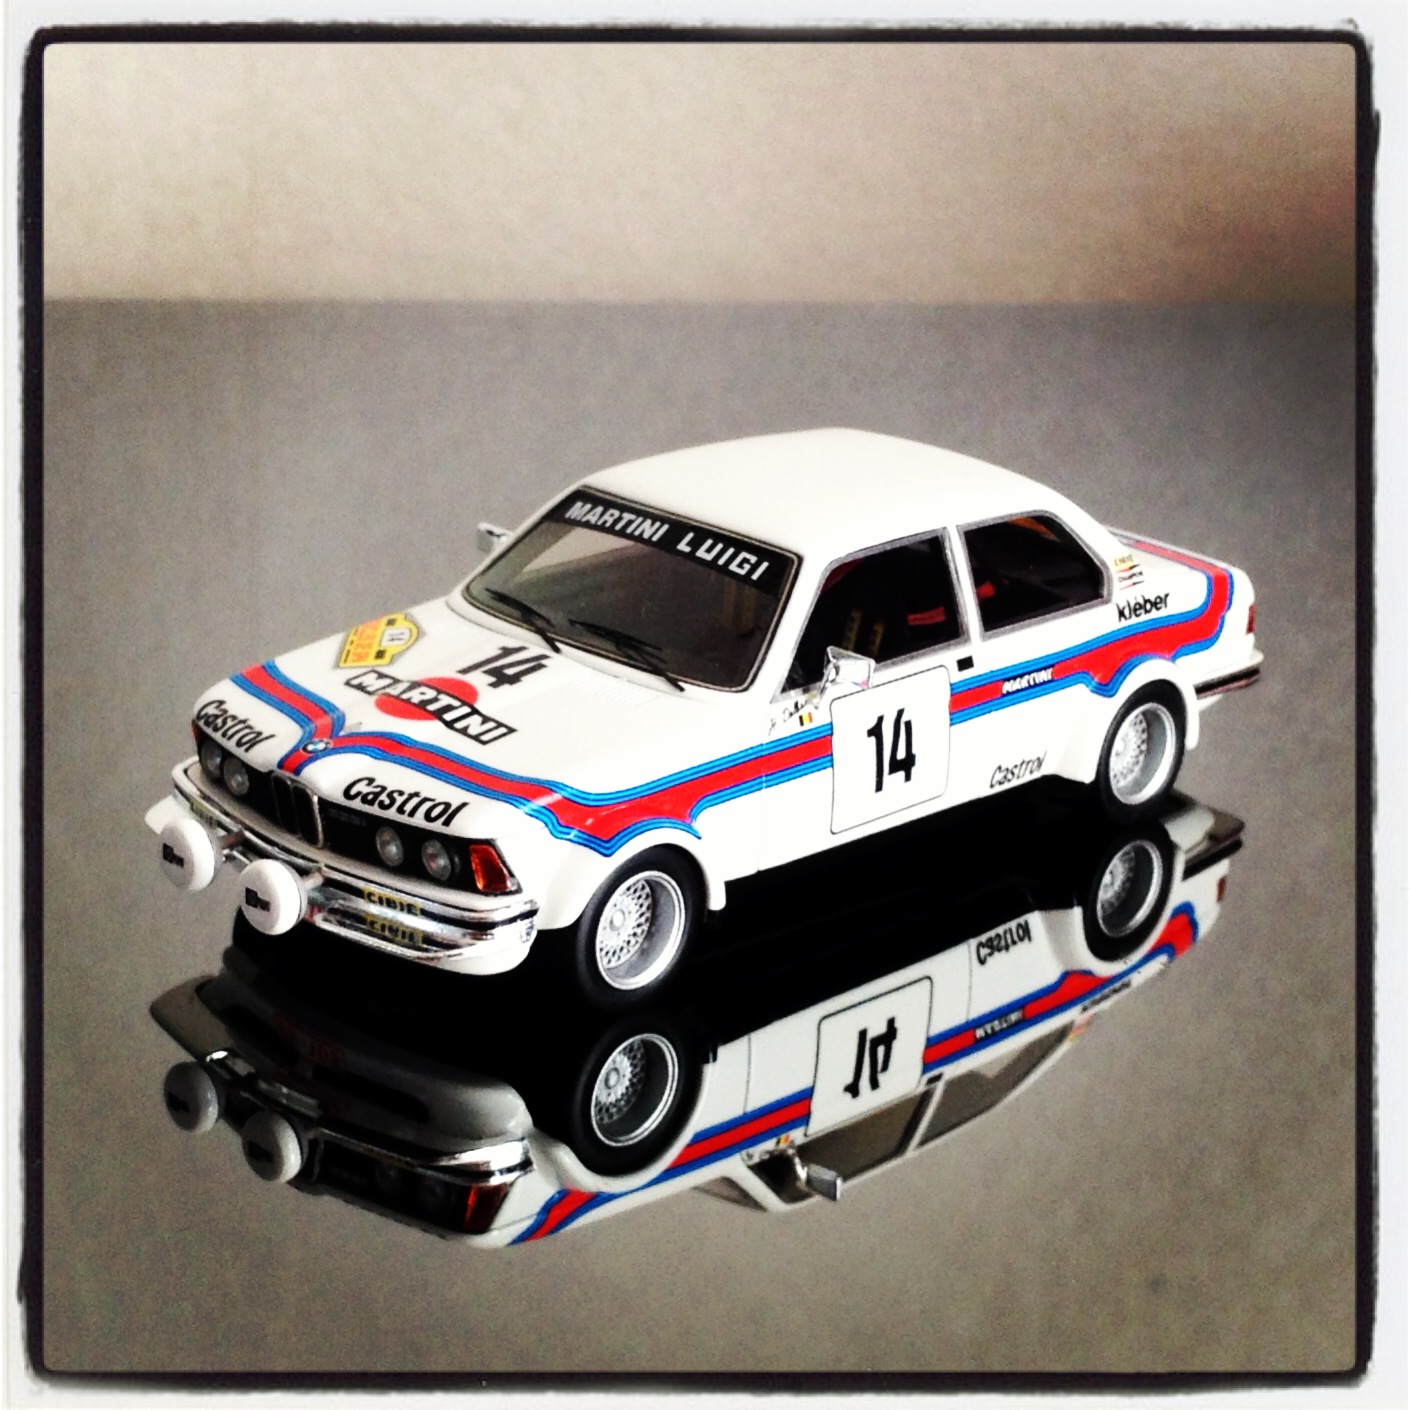 BMW 323i (E21) Martini, Boucles de Spa 1980, #14 Delbar (neo)